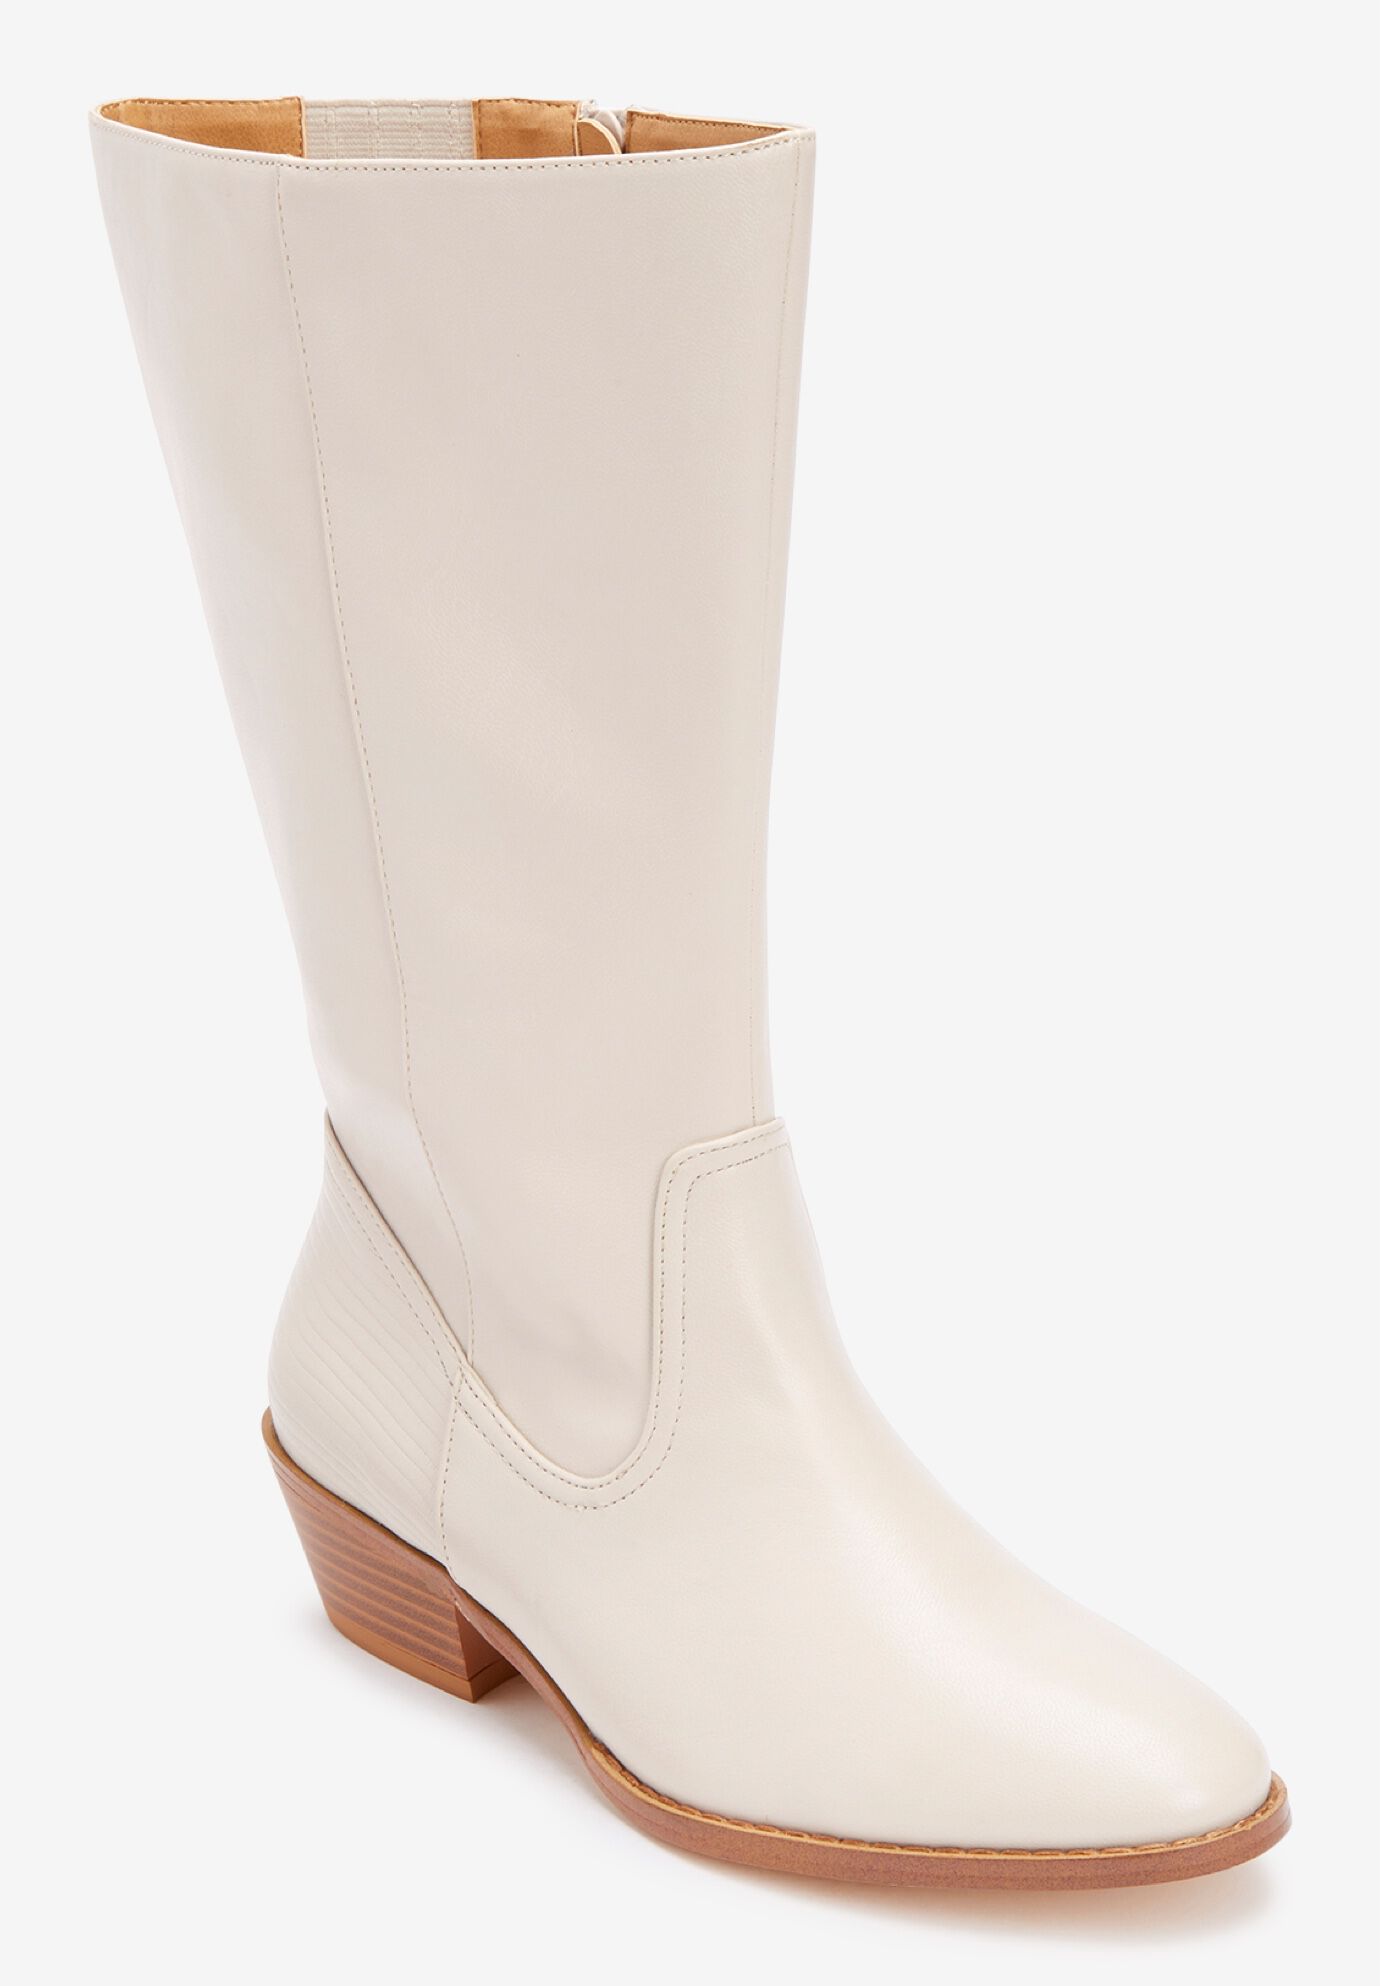 Womens Fashion Dress High Heel Zipper Mid Calf Knee High Riding Boots Shoes A550 